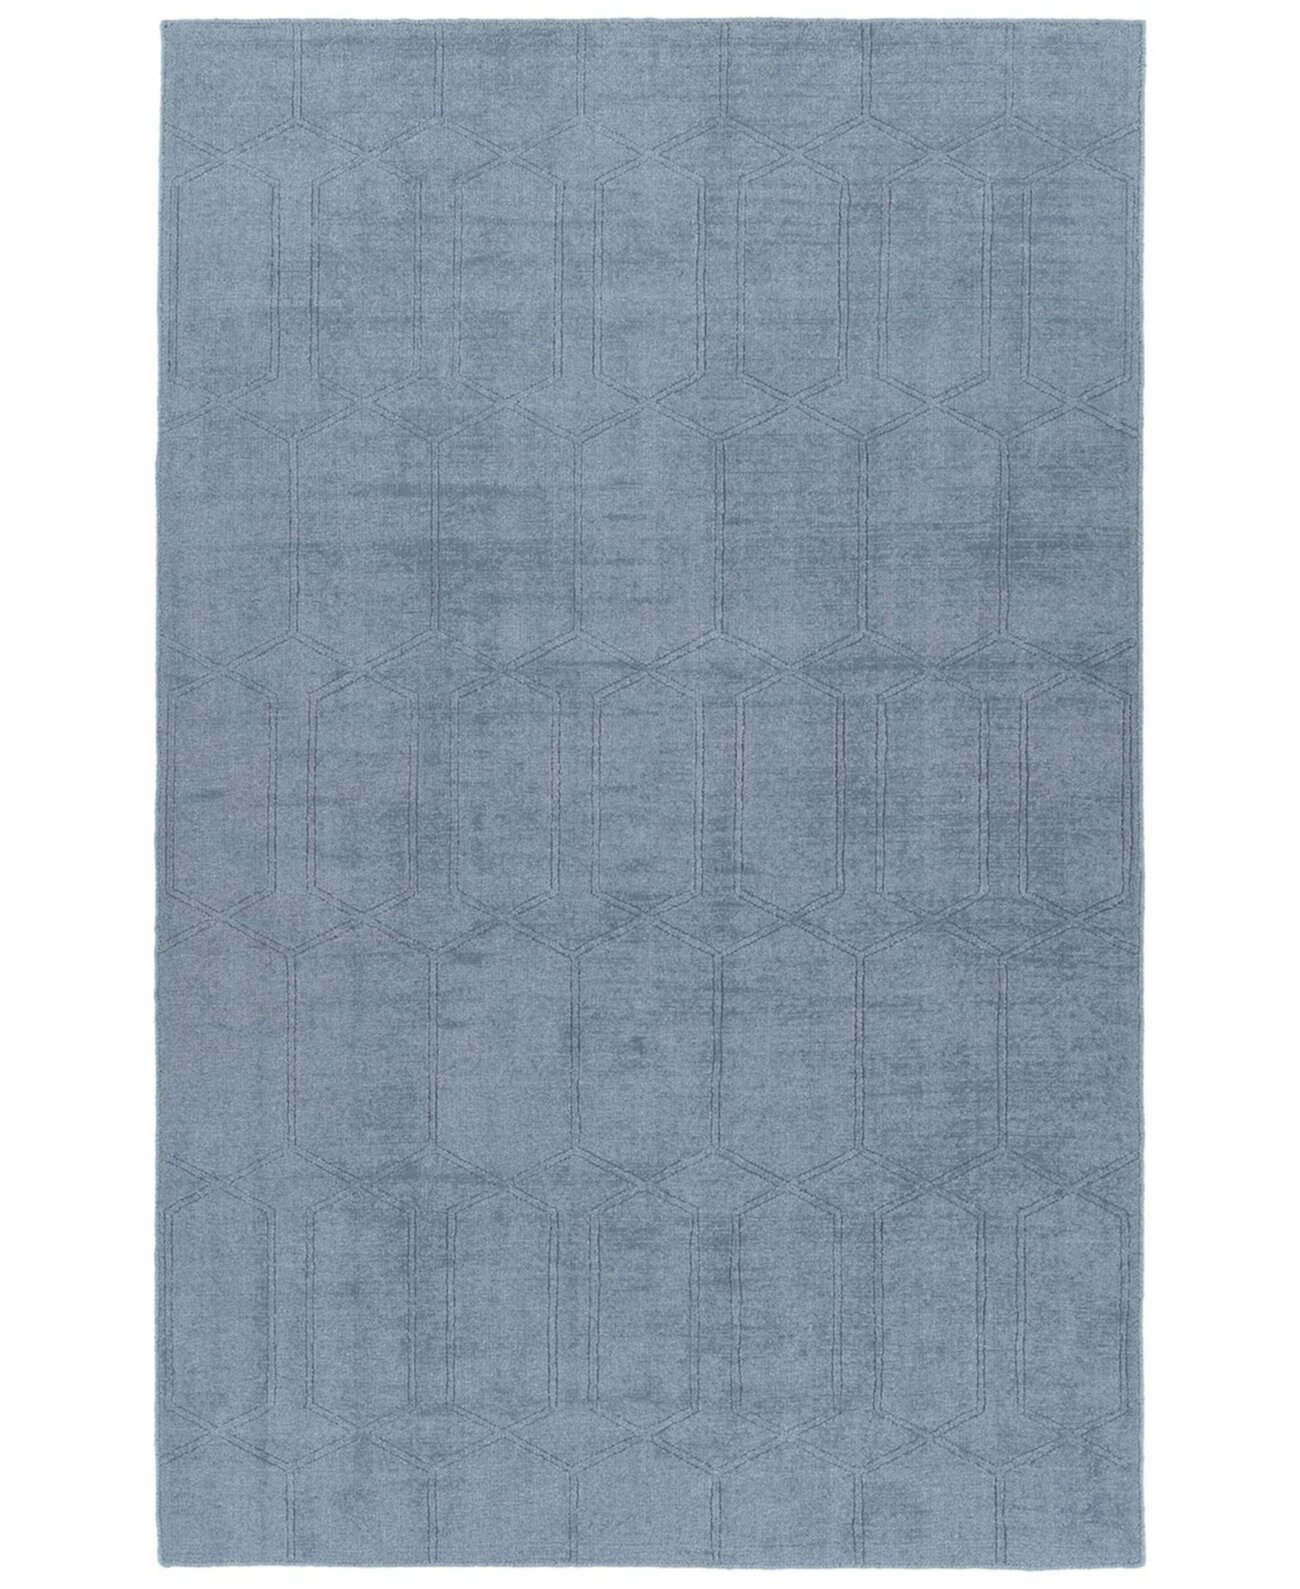 Minkah MKH03-17 Синий коврик для улицы размером 2 x 3 фута Kaleen